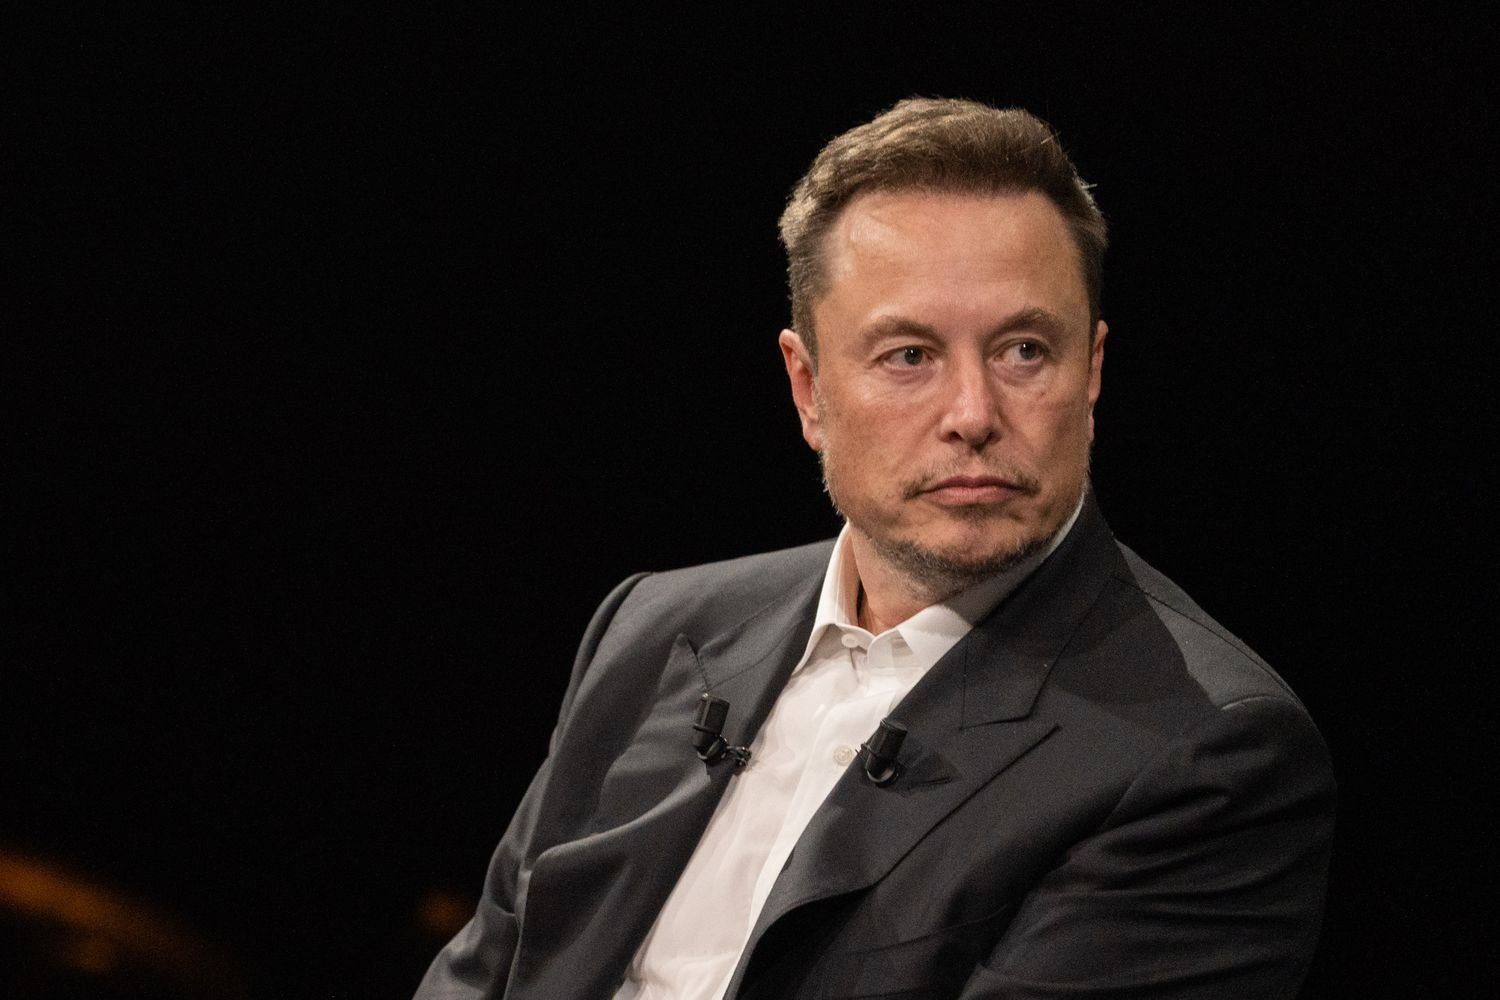 Tesla shareholder sues Musk for alleged $7.5 billion insider trading